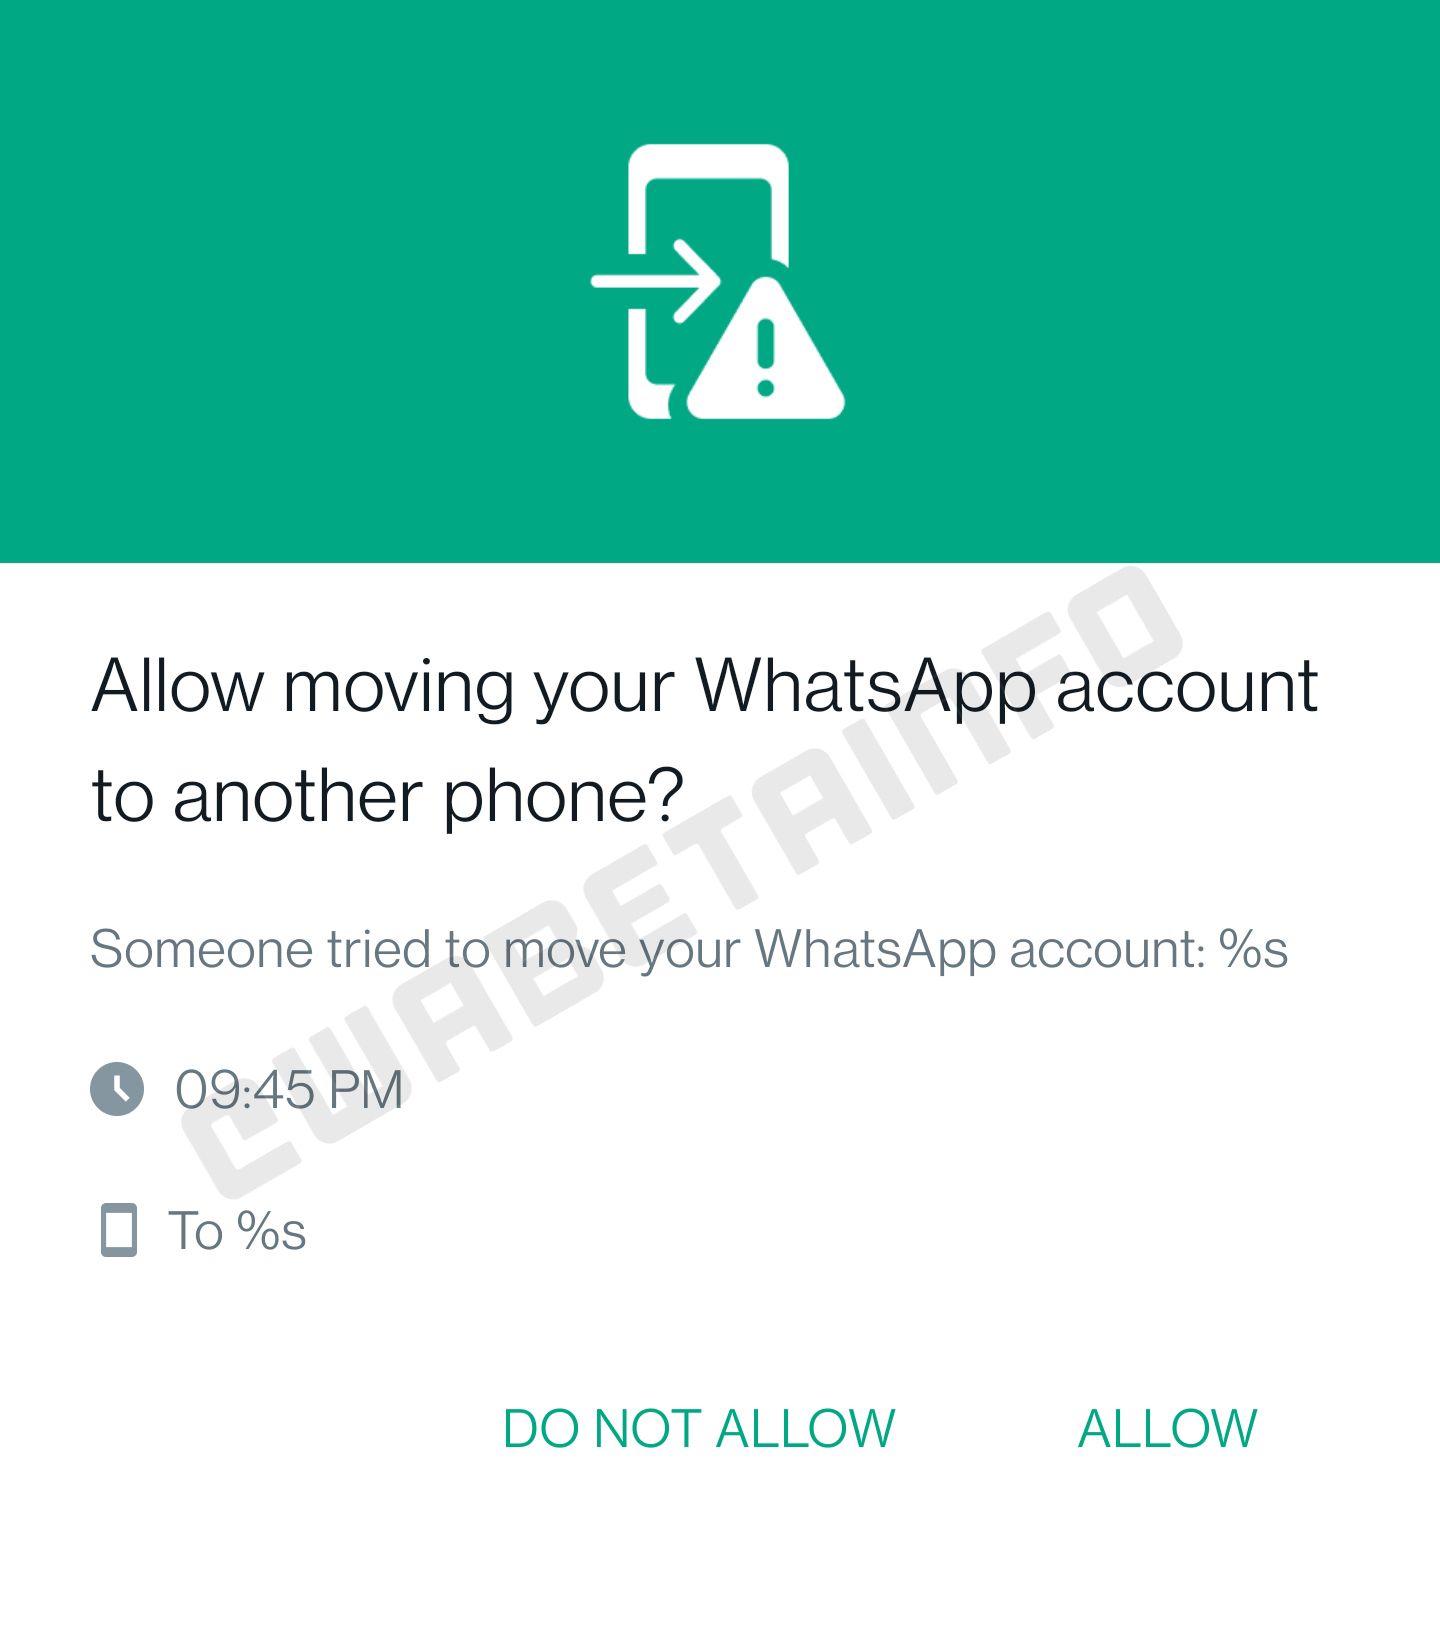 WhatsApp device login approval